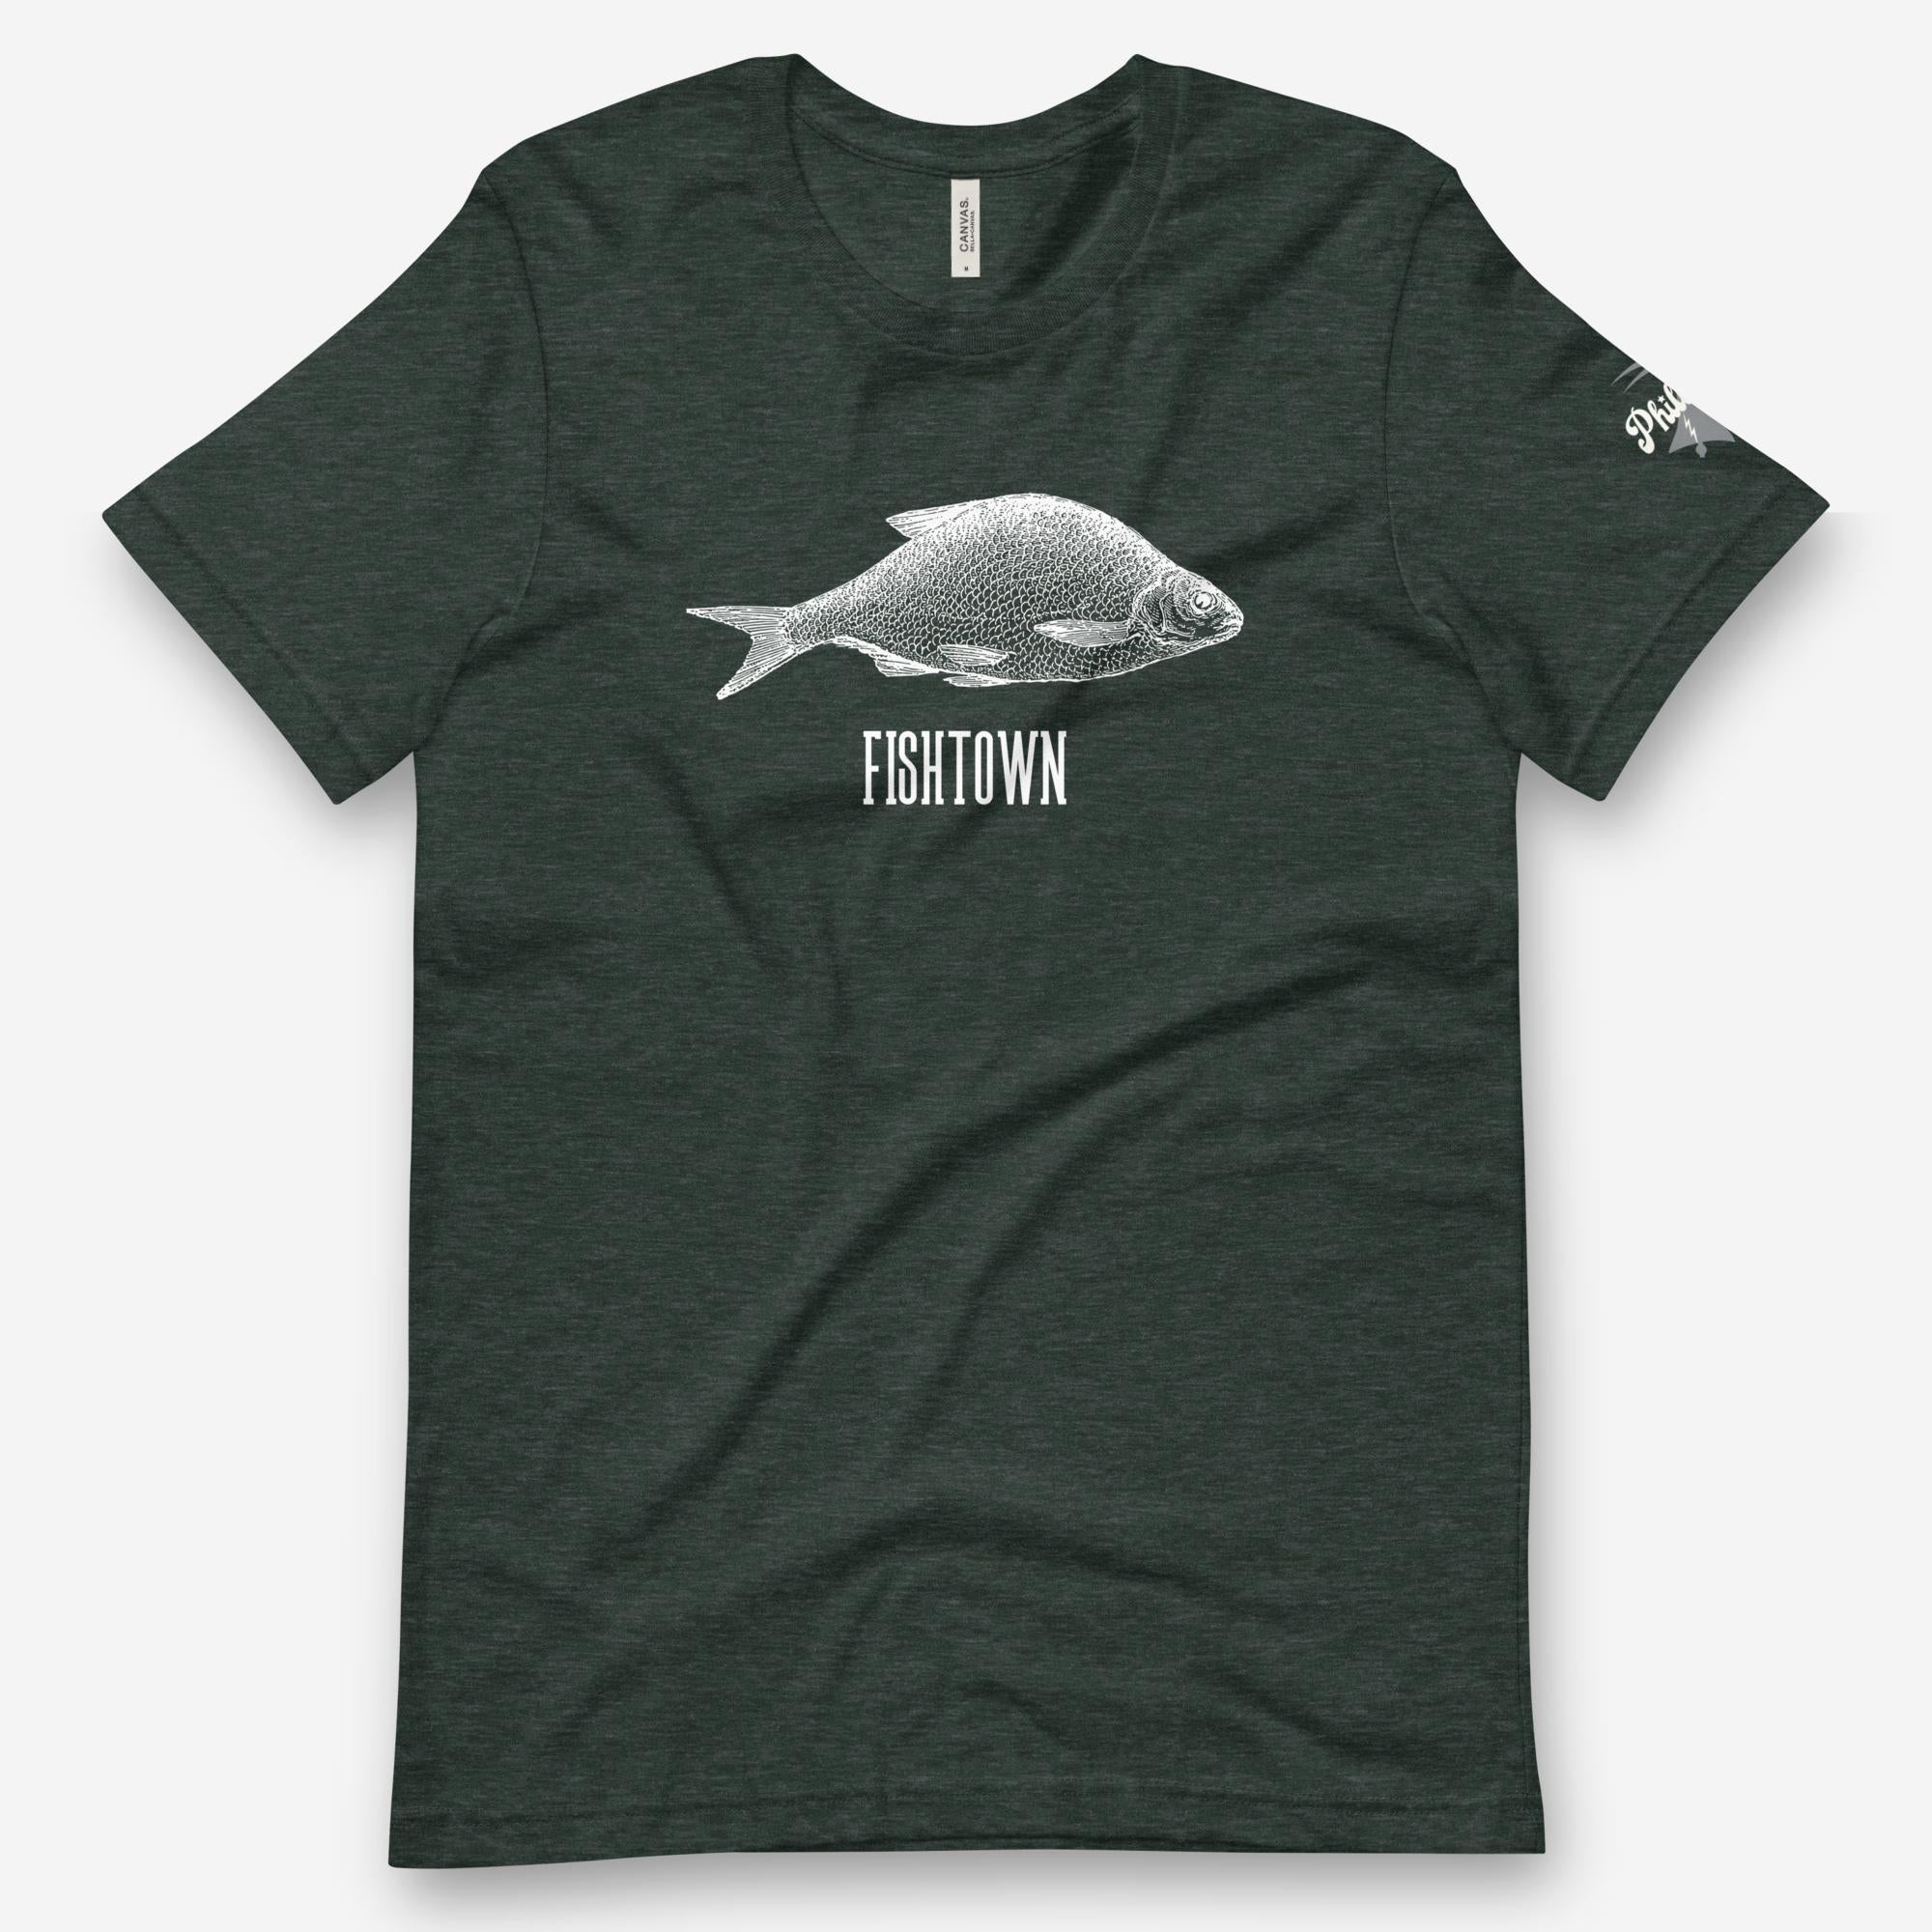 "Fishtown" Tee